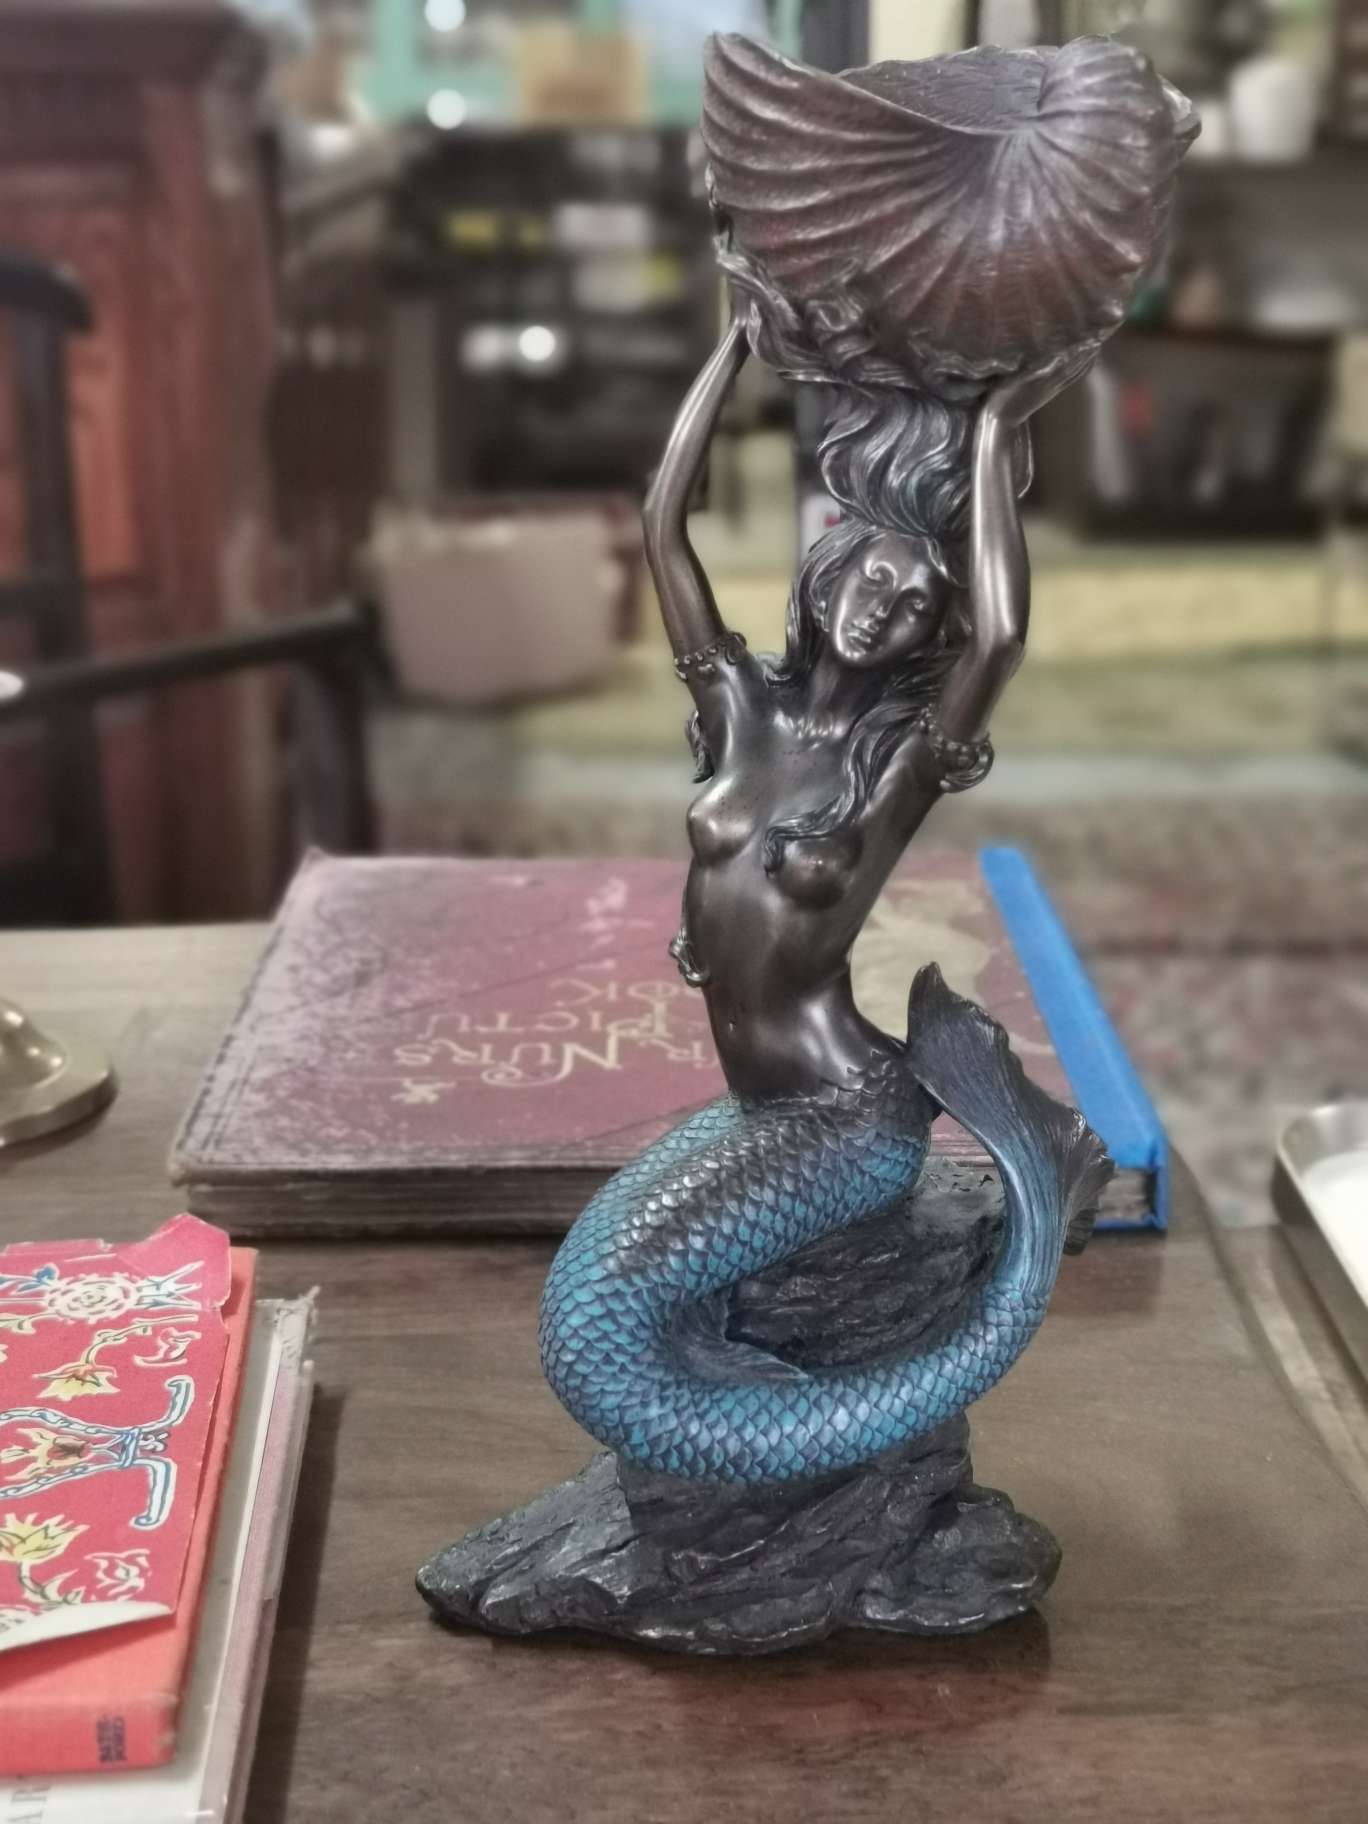 Mermaid figurine